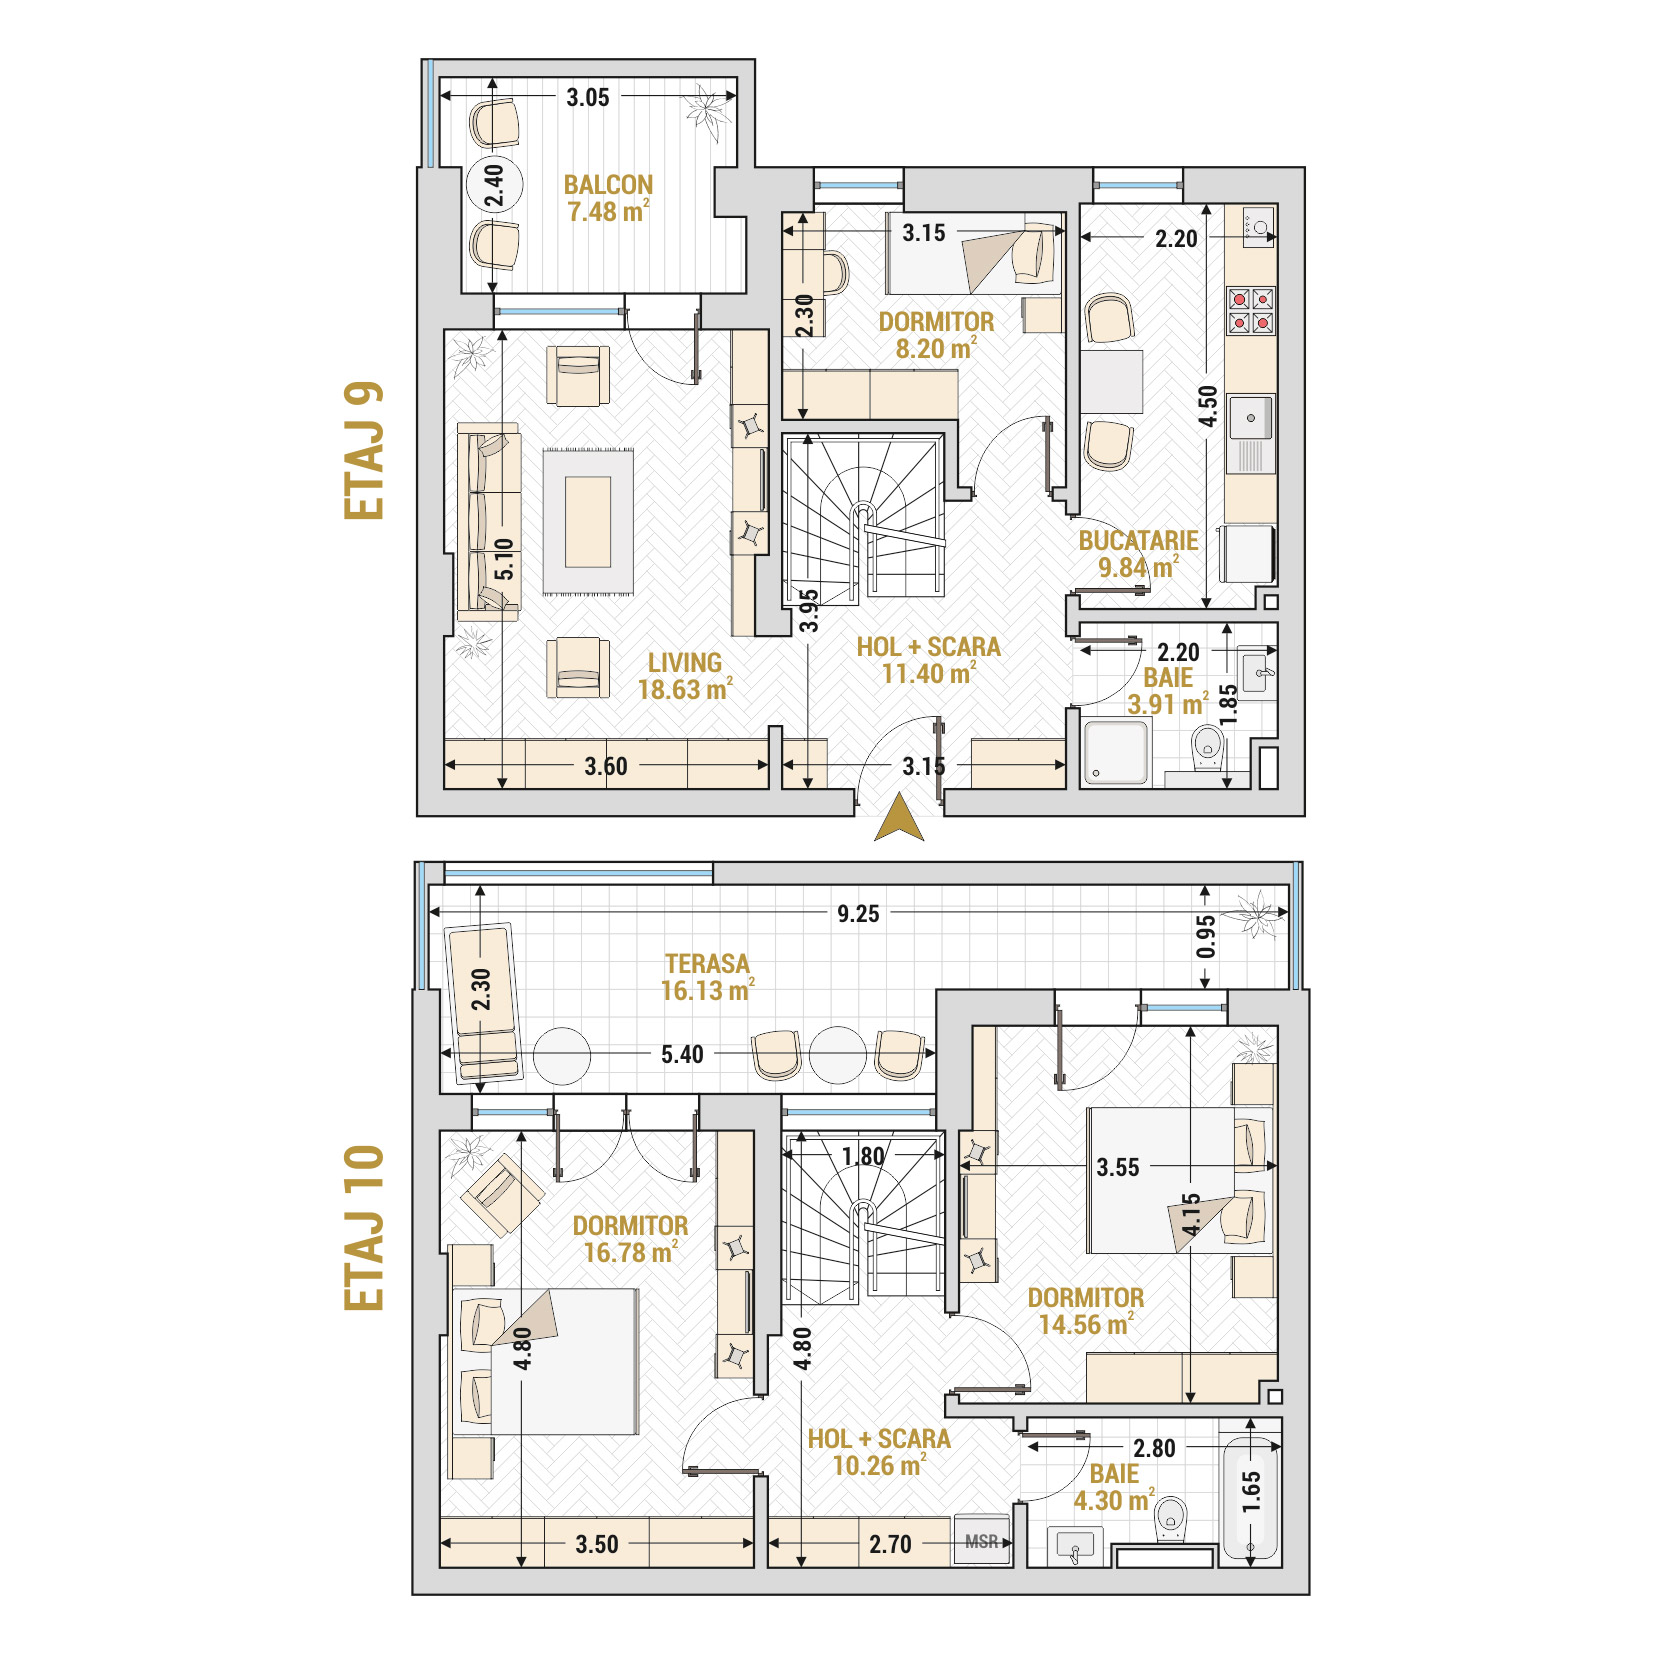 Penthouse 4 Camere Tip 1 Corp 9 - Drumul Taberei Residence - Apartamente de vanzare Bucuresti - Suprafata utila totala - 121.49 mp